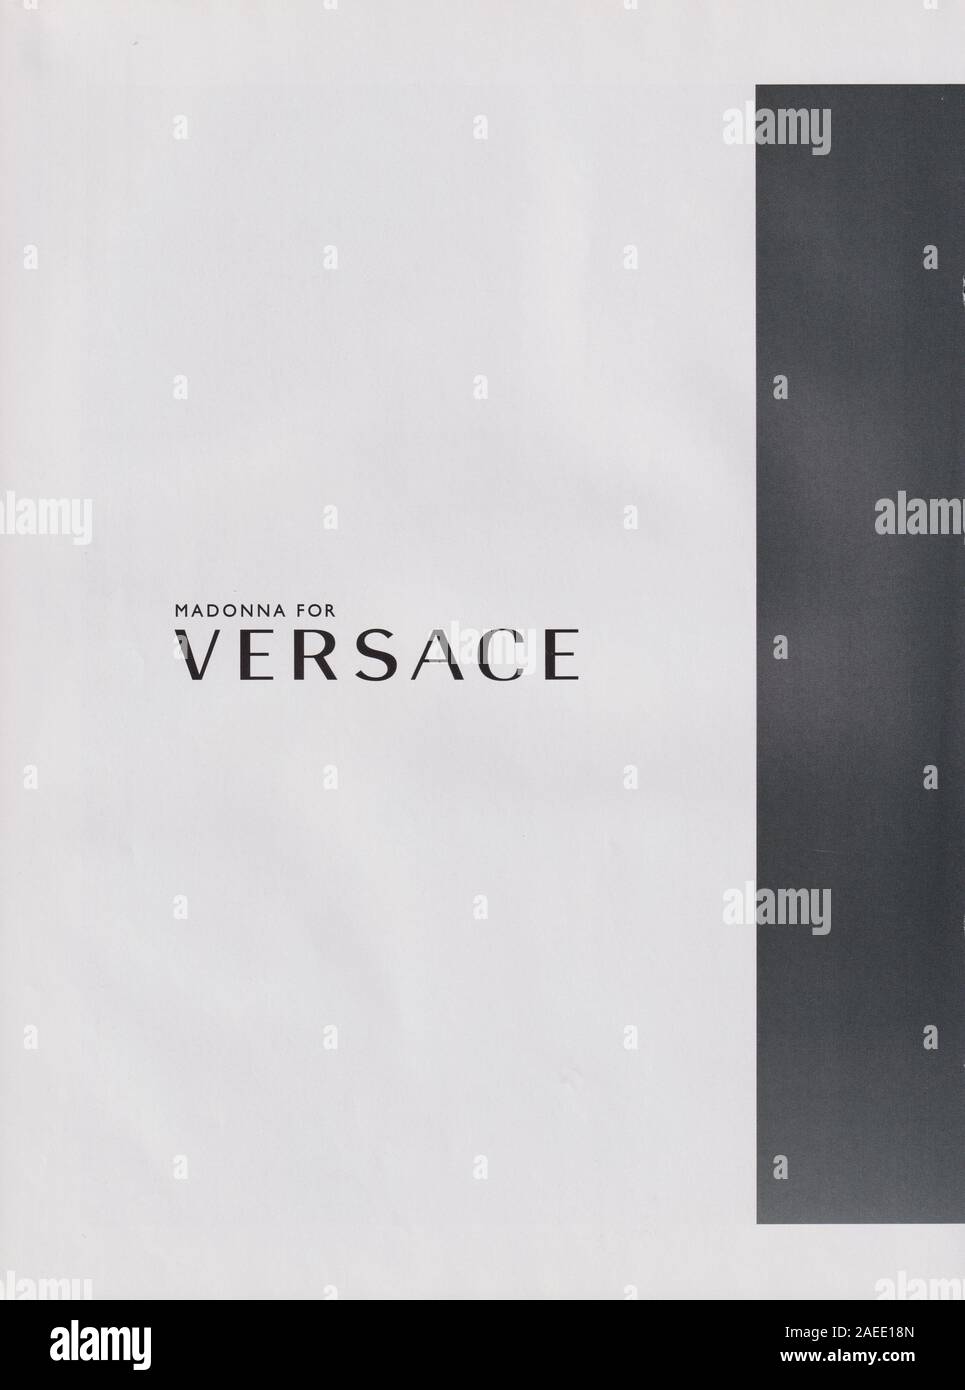 Affiche publicitaire de la maison de couture VERSACE avec Madonna dans le magazine papier de l'année 2015, une publicité, une publicité à partir d'VERSACE créatifs 2010s Banque D'Images